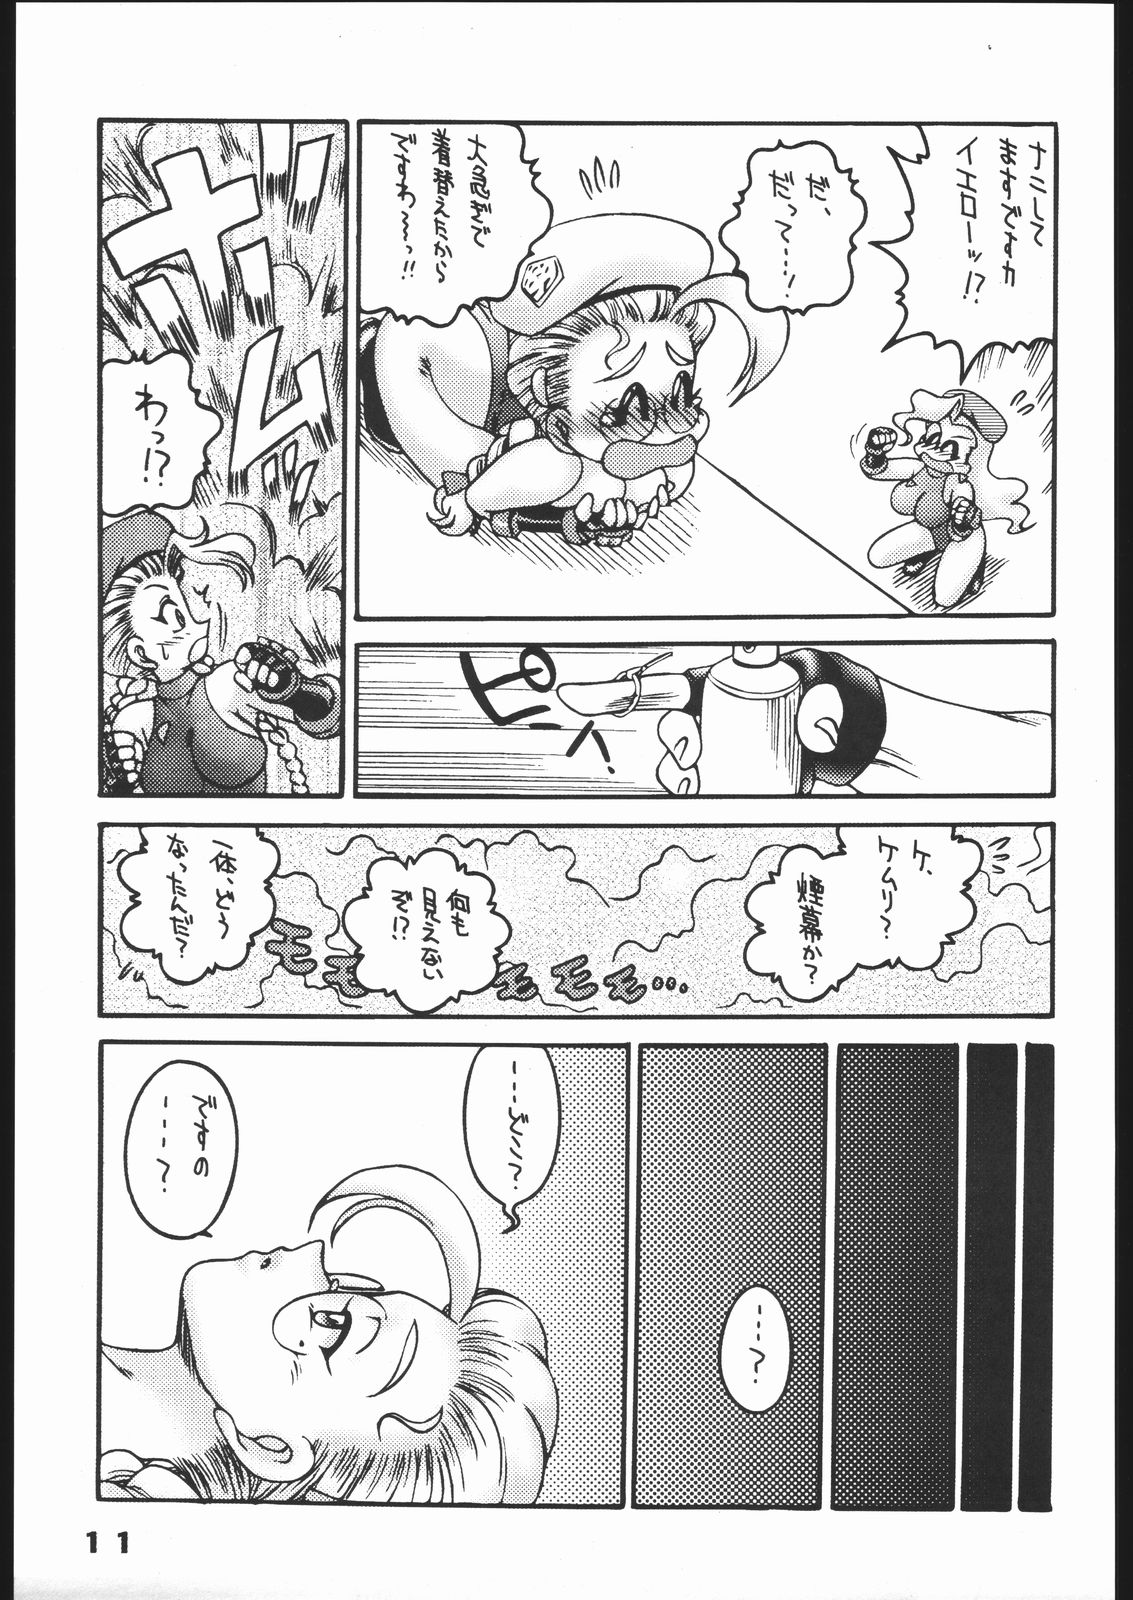 [Street Fighter] Nousatsu Sentai Blonde Antennas 2 - Yellow Alert (Sunset Dreamer) page 10 full